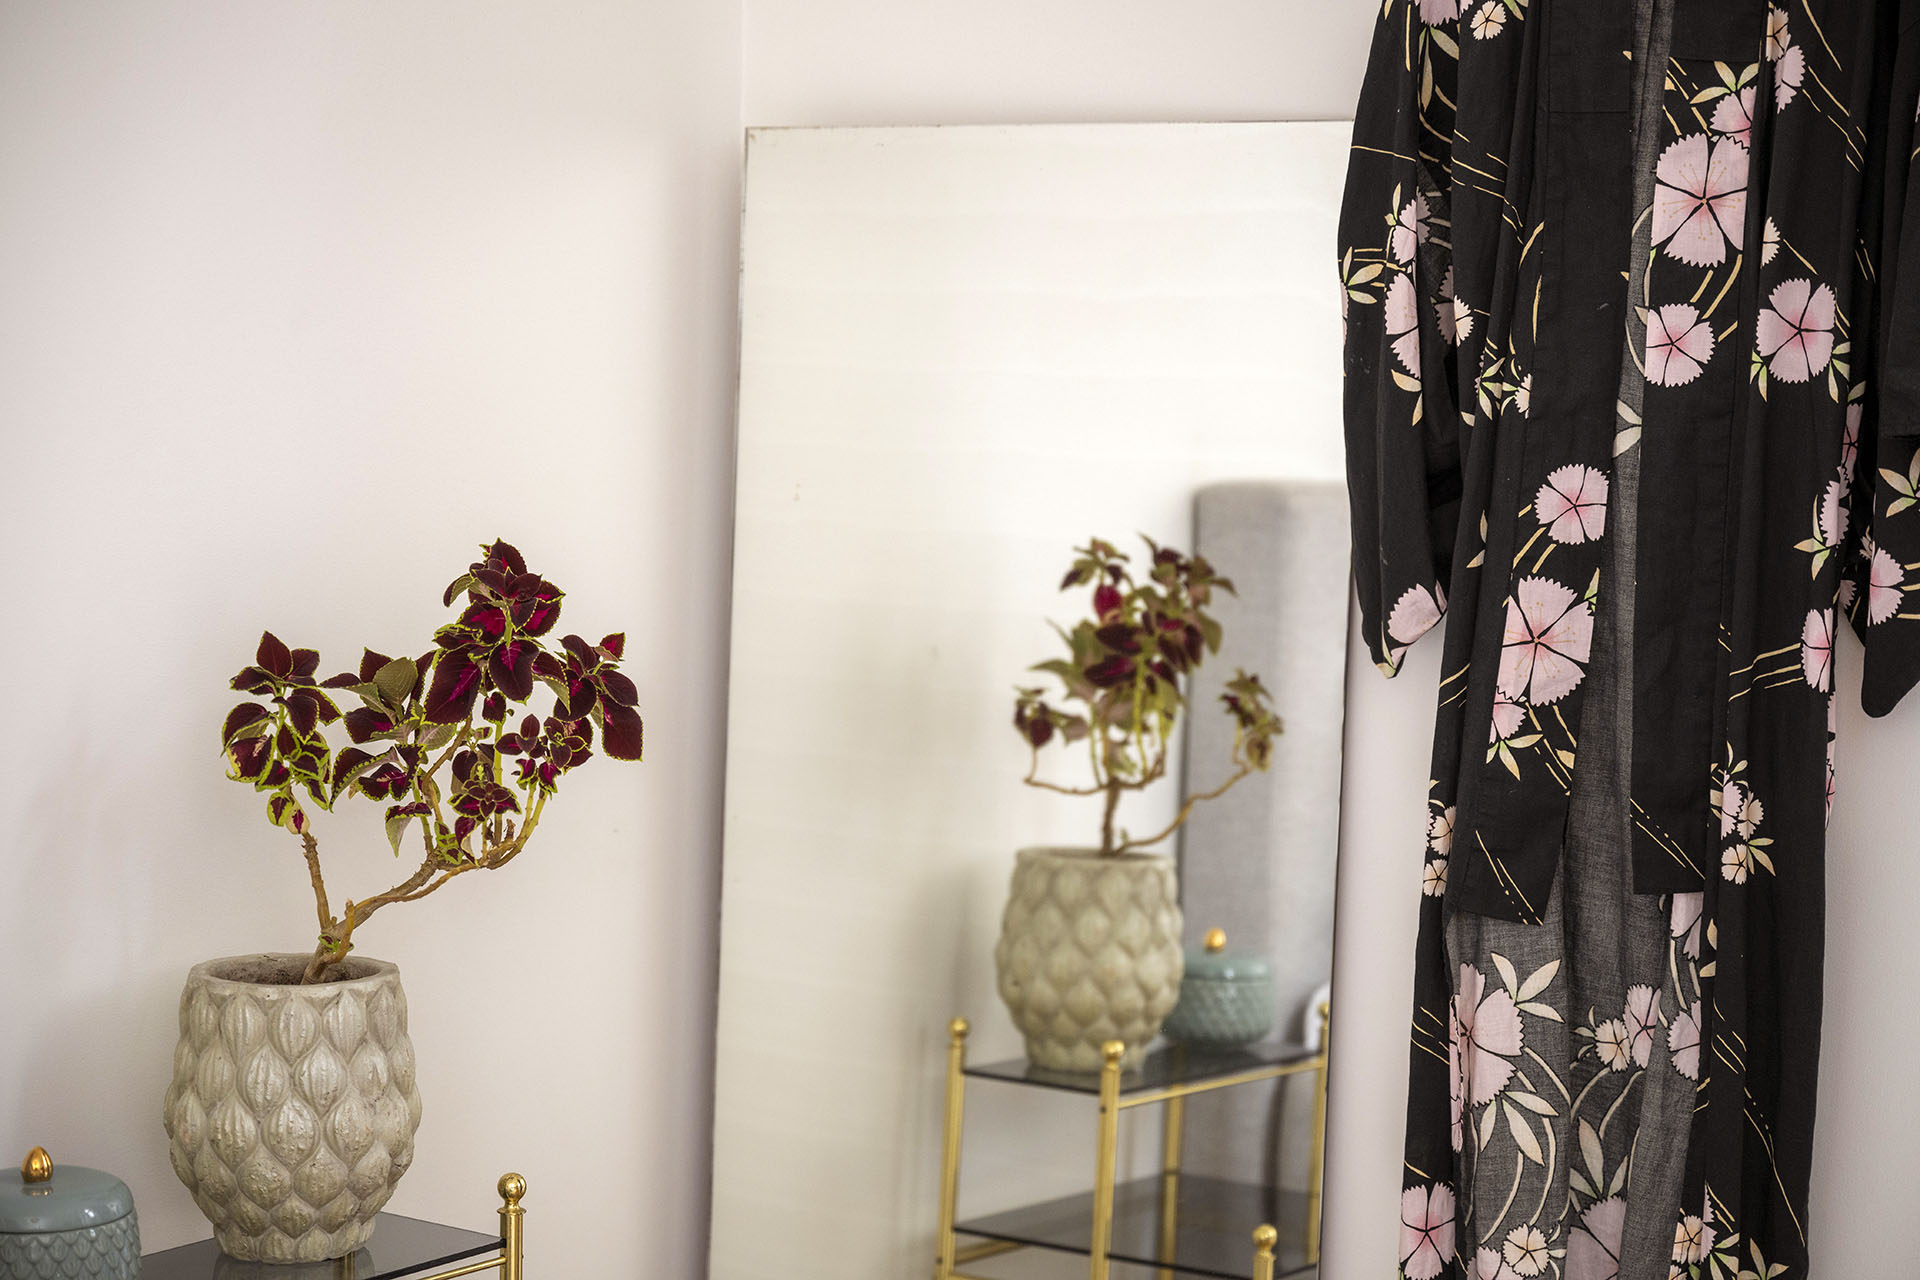 En spegel som står lutad på väggen, en blomkruka som är bubblig i formen och sen en kimono som hänger på väggen